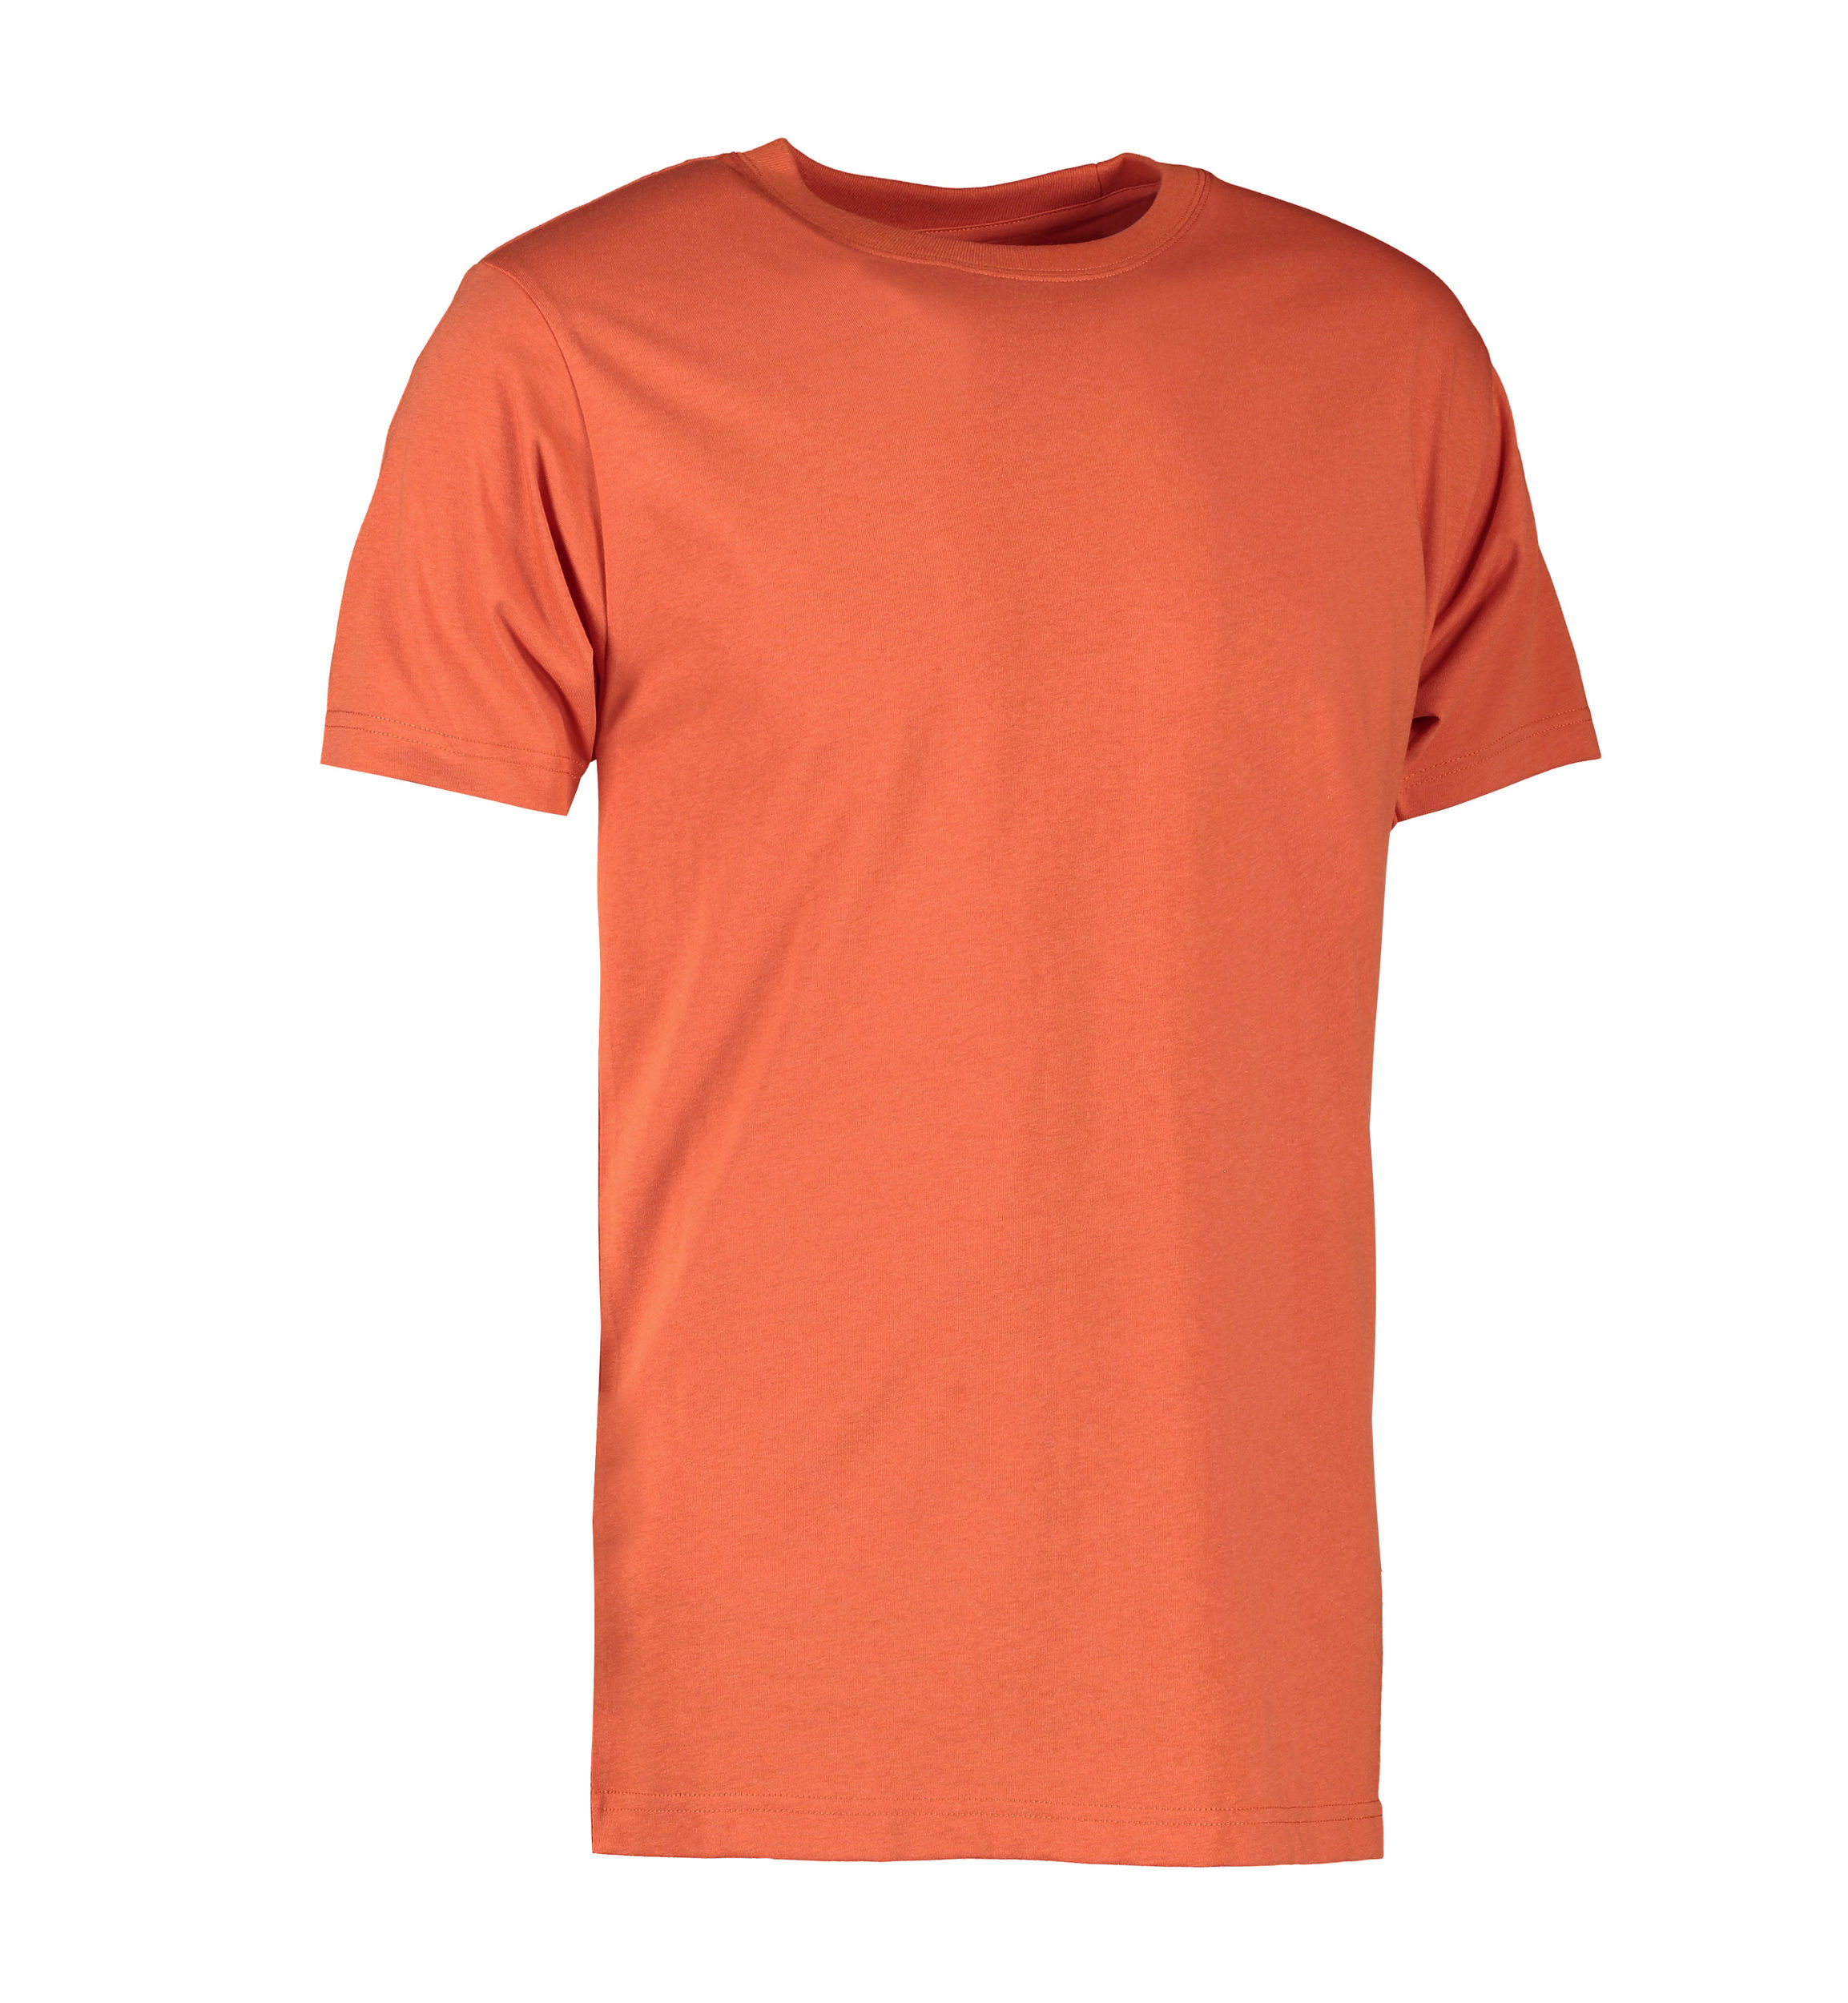 Billede af Koral farvet slidstærk t-shirt til mænd - S hos Sygeplejebutikken.dk